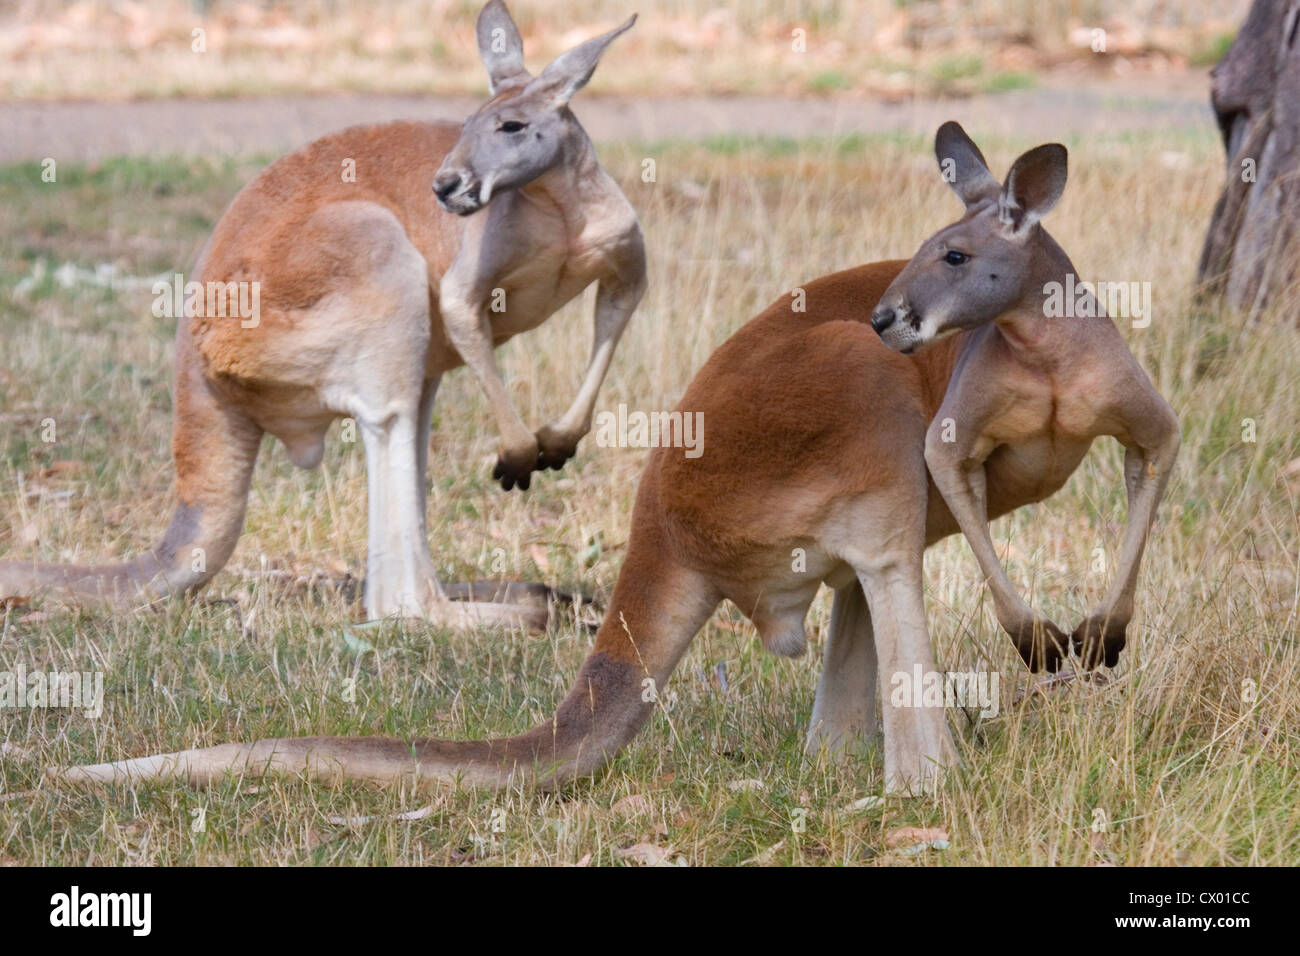 Two Kangaroos pose, Adelaide, Australia Stock Photo